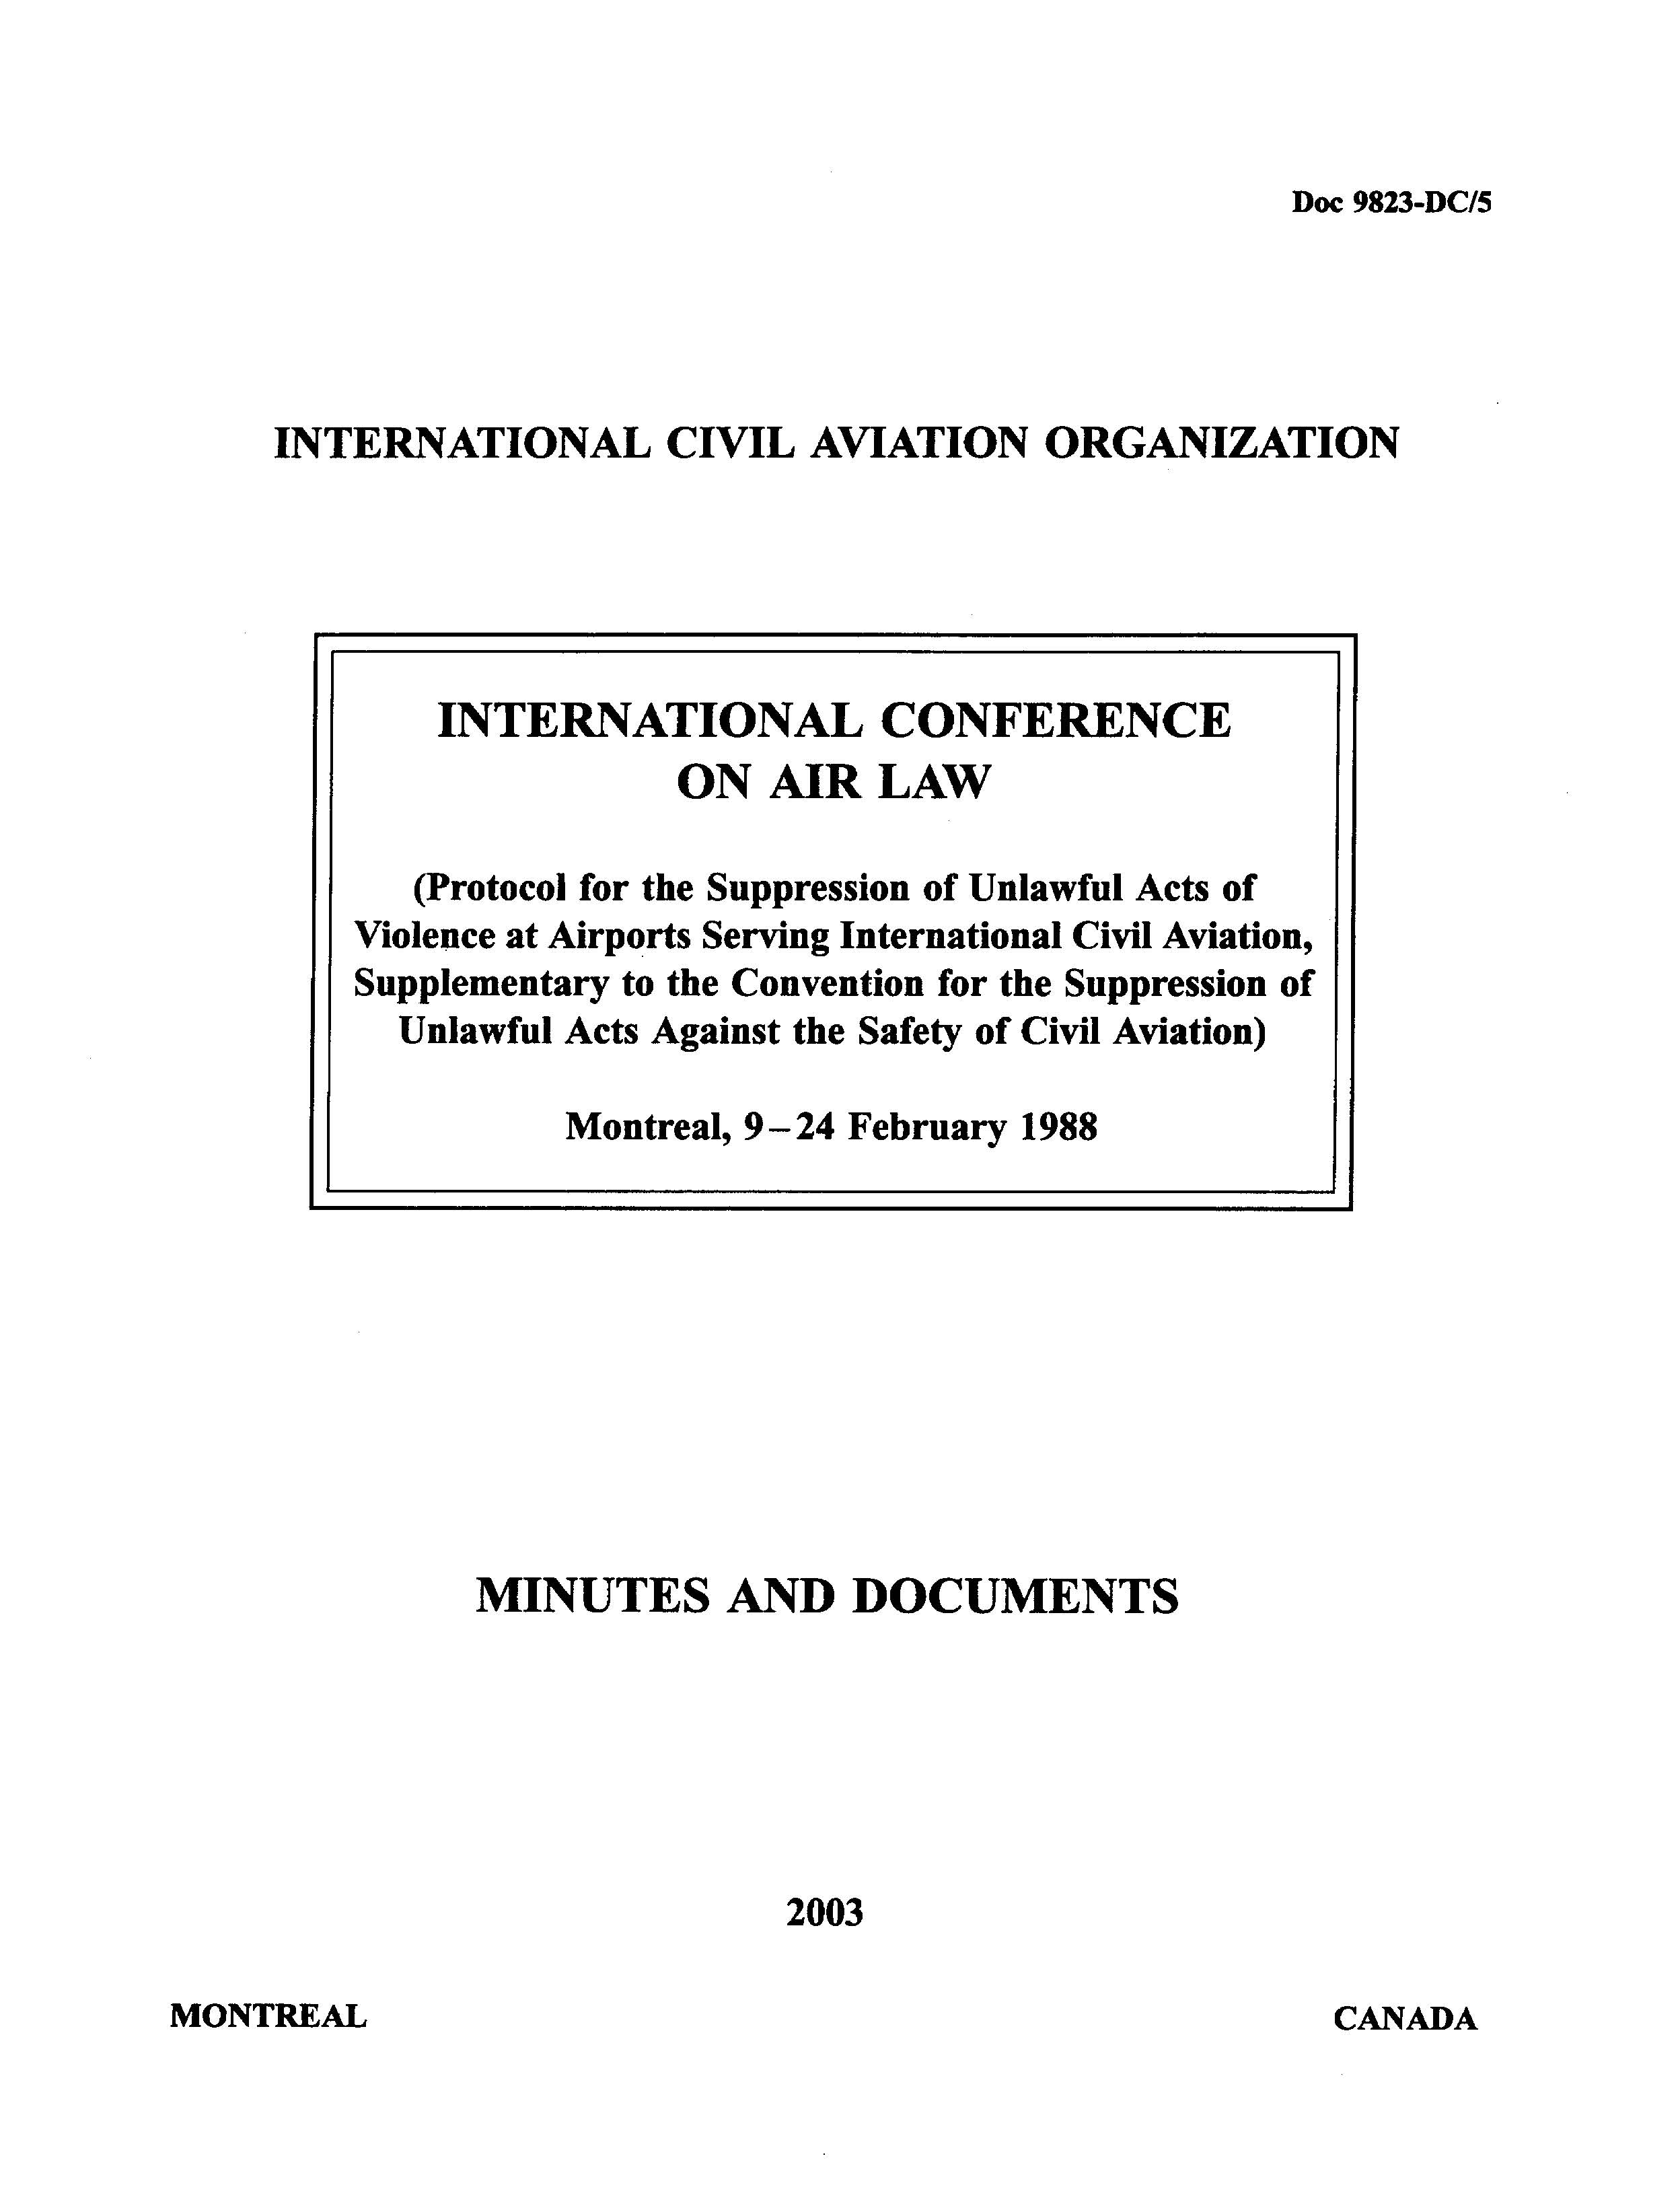 ICAO 9823